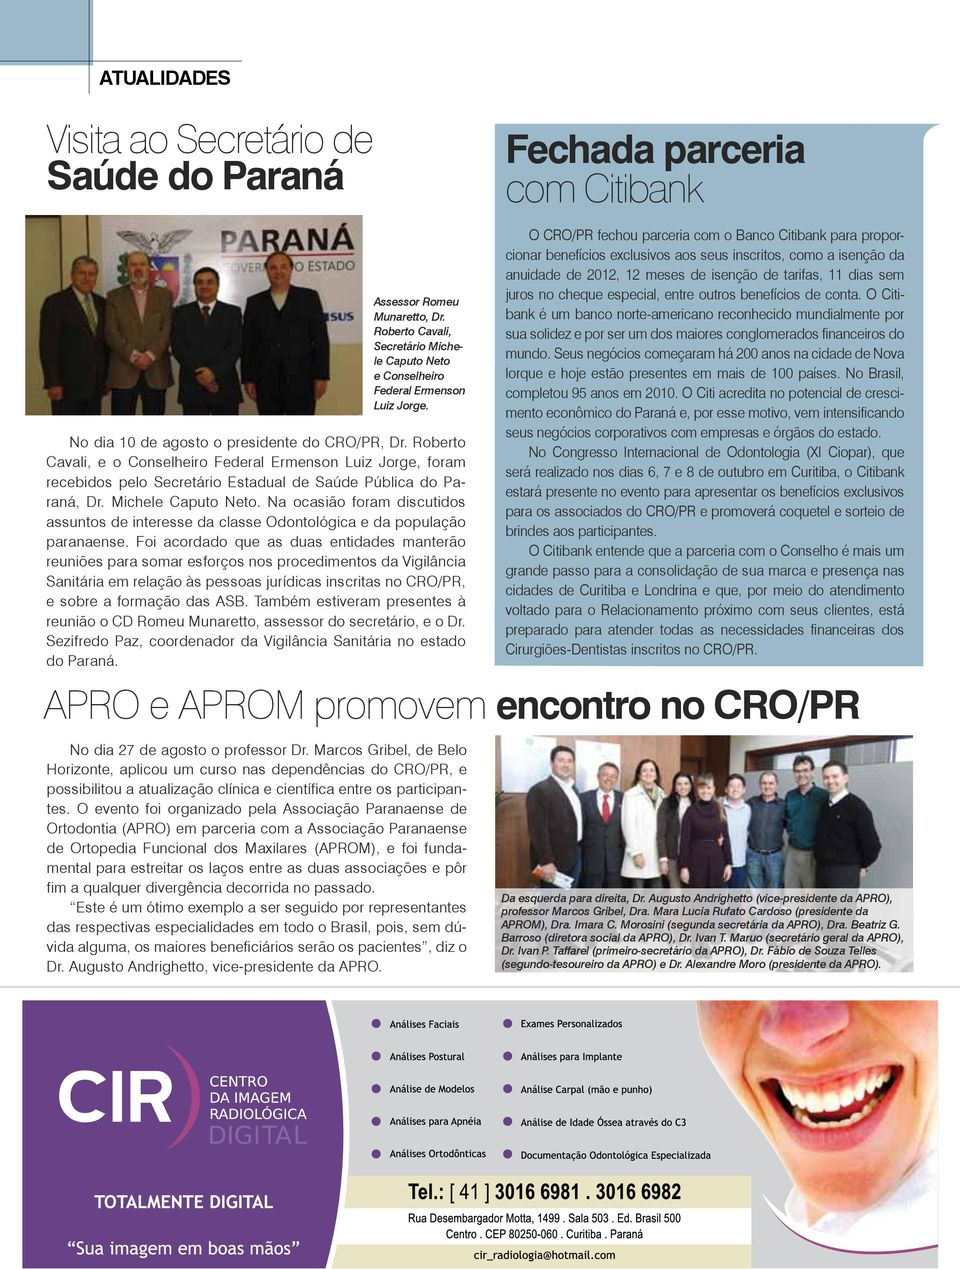 roberto Cavali, e o Conselheiro Federal ermenson Luiz Jorge, foram recebidos pelo secretário estadual de saúde Pública do Paraná, dr. Michele Caputo neto.